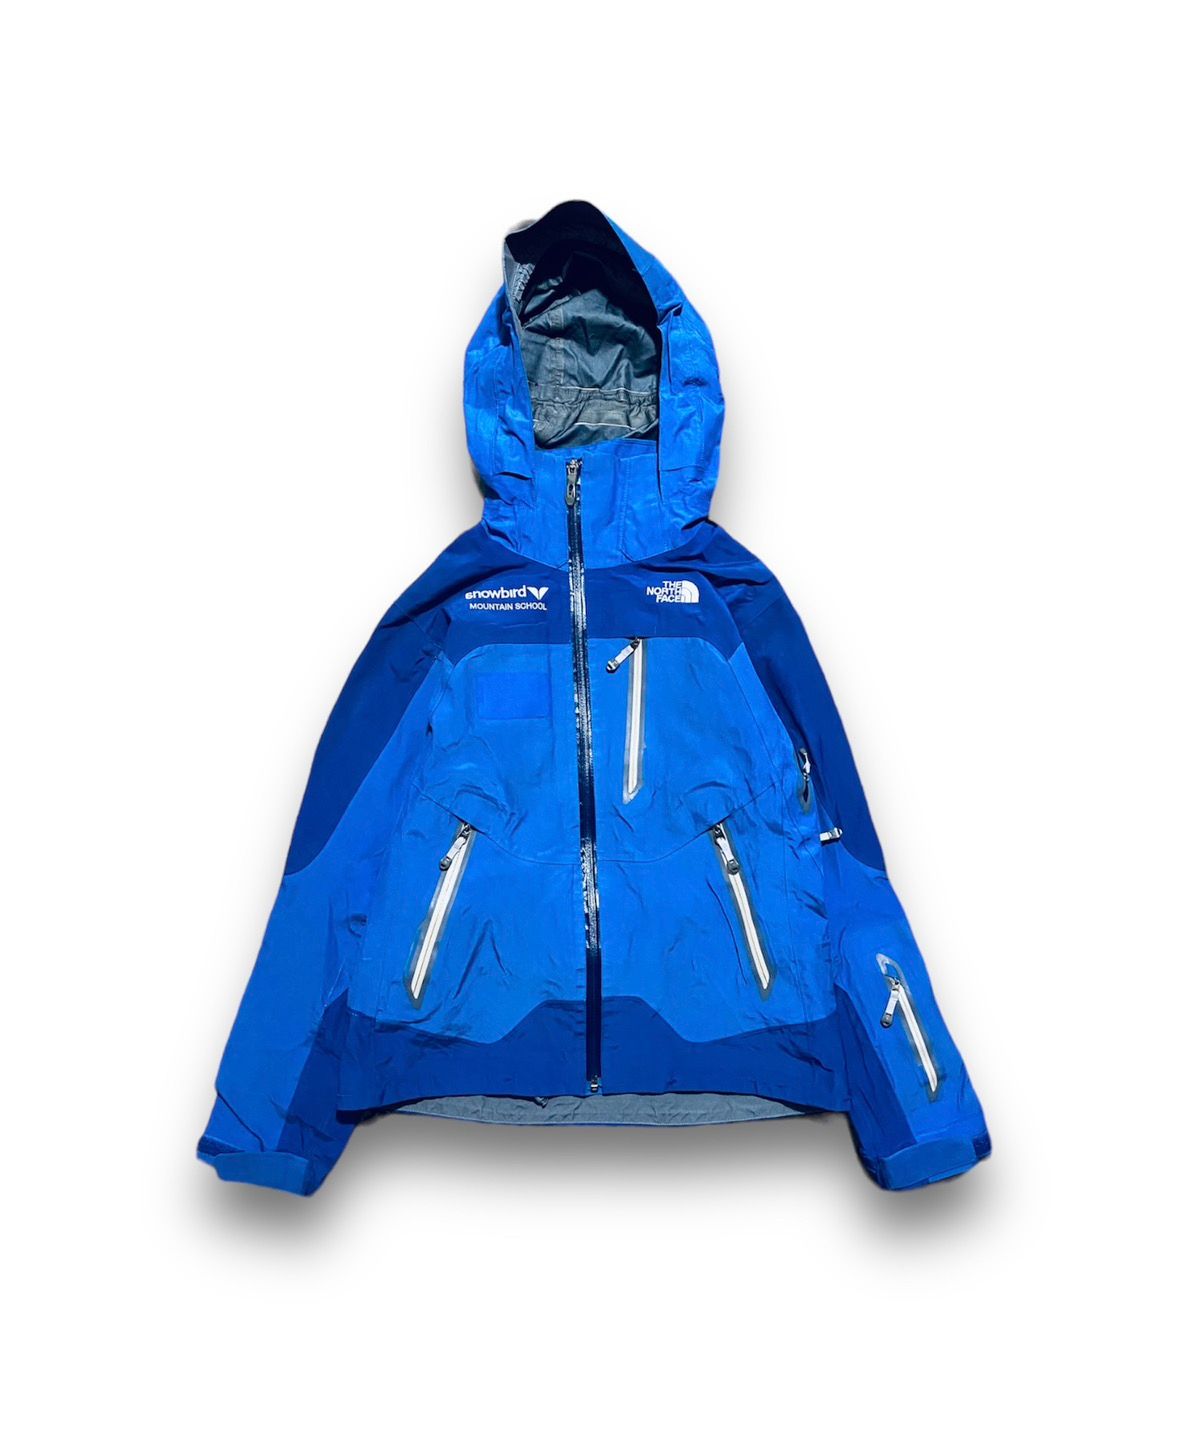 The North Face Goretex Pro Shell Jacket Recco Ski Women’s M - 1